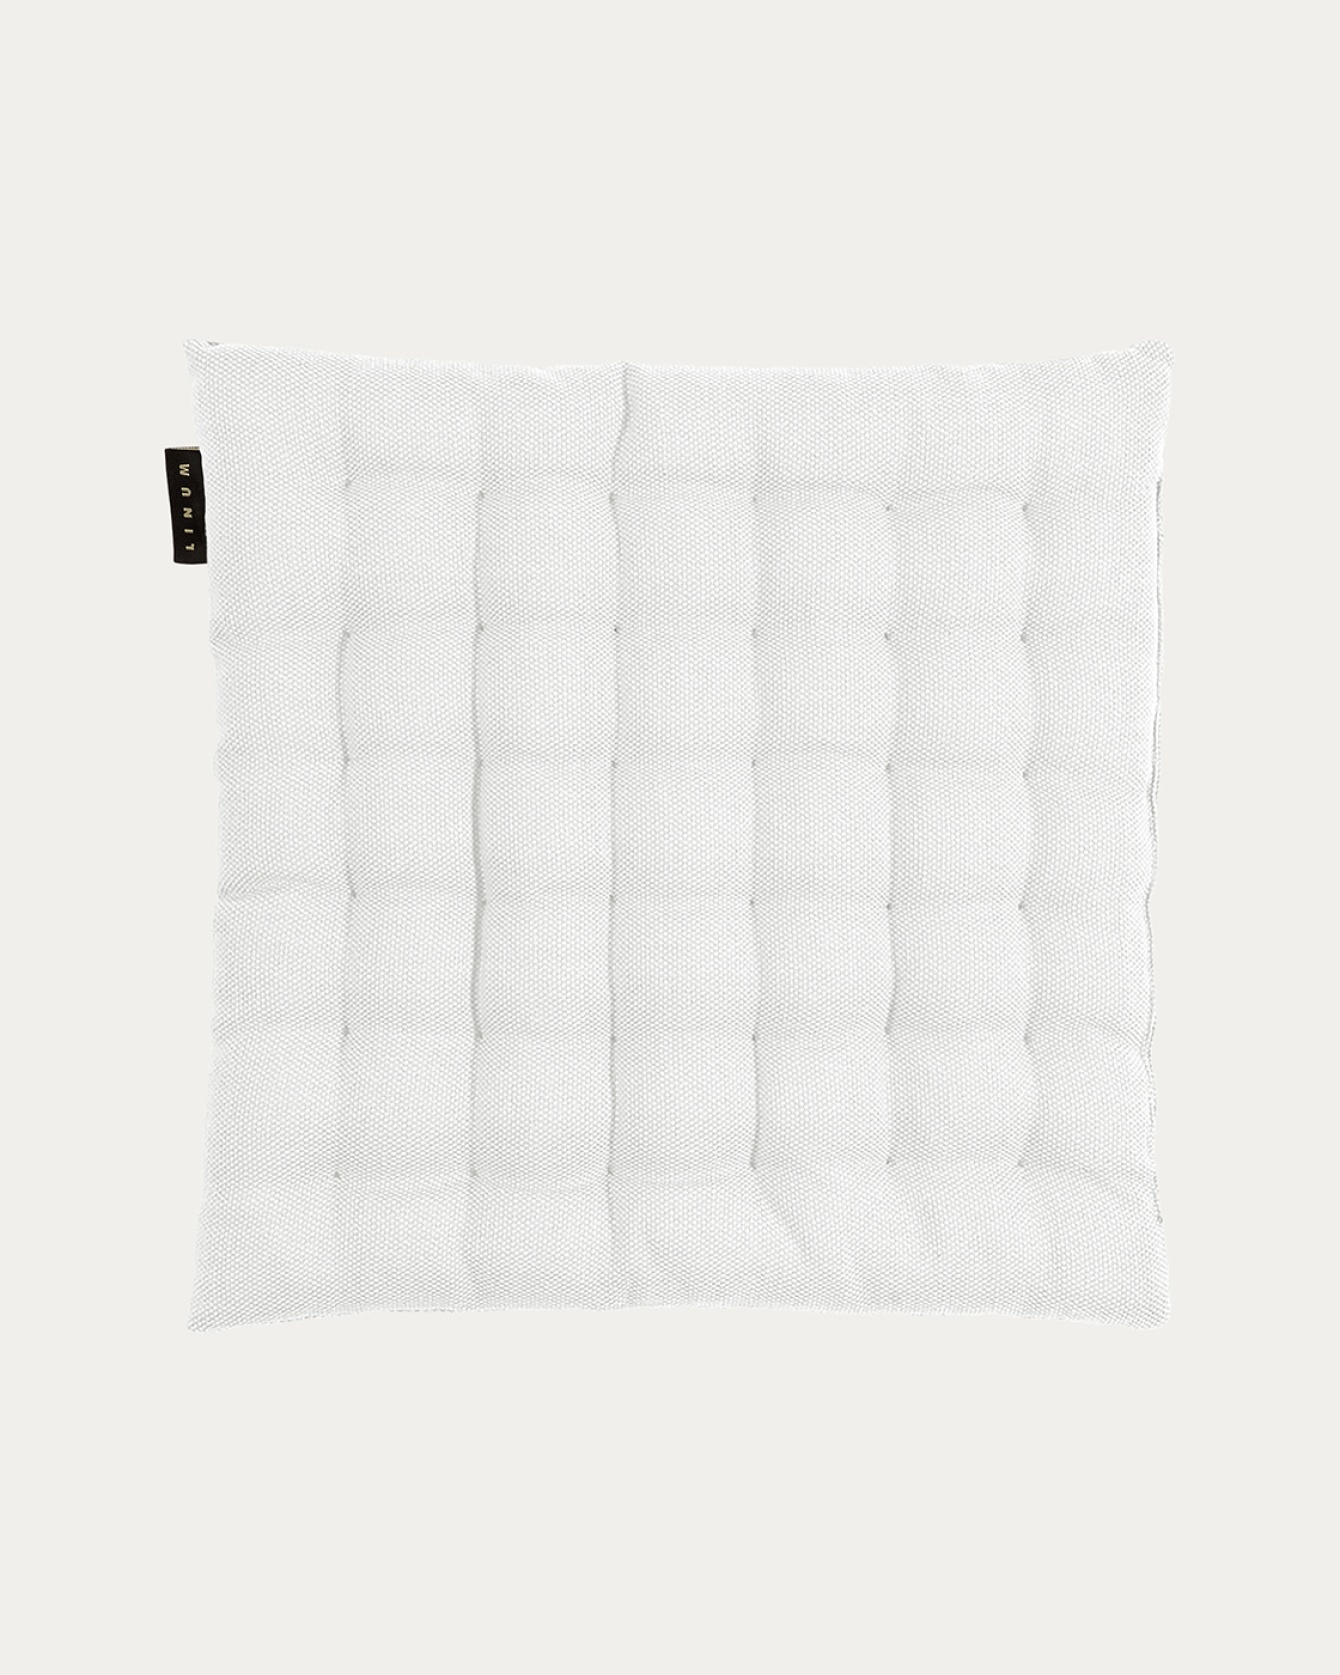 Produktbild weiß PEPPER Sitzkissen aus weicher Baumwolle mit Füllung aus recyceltem Polyester von LINUM DESIGN. Größe 40x40 cm.